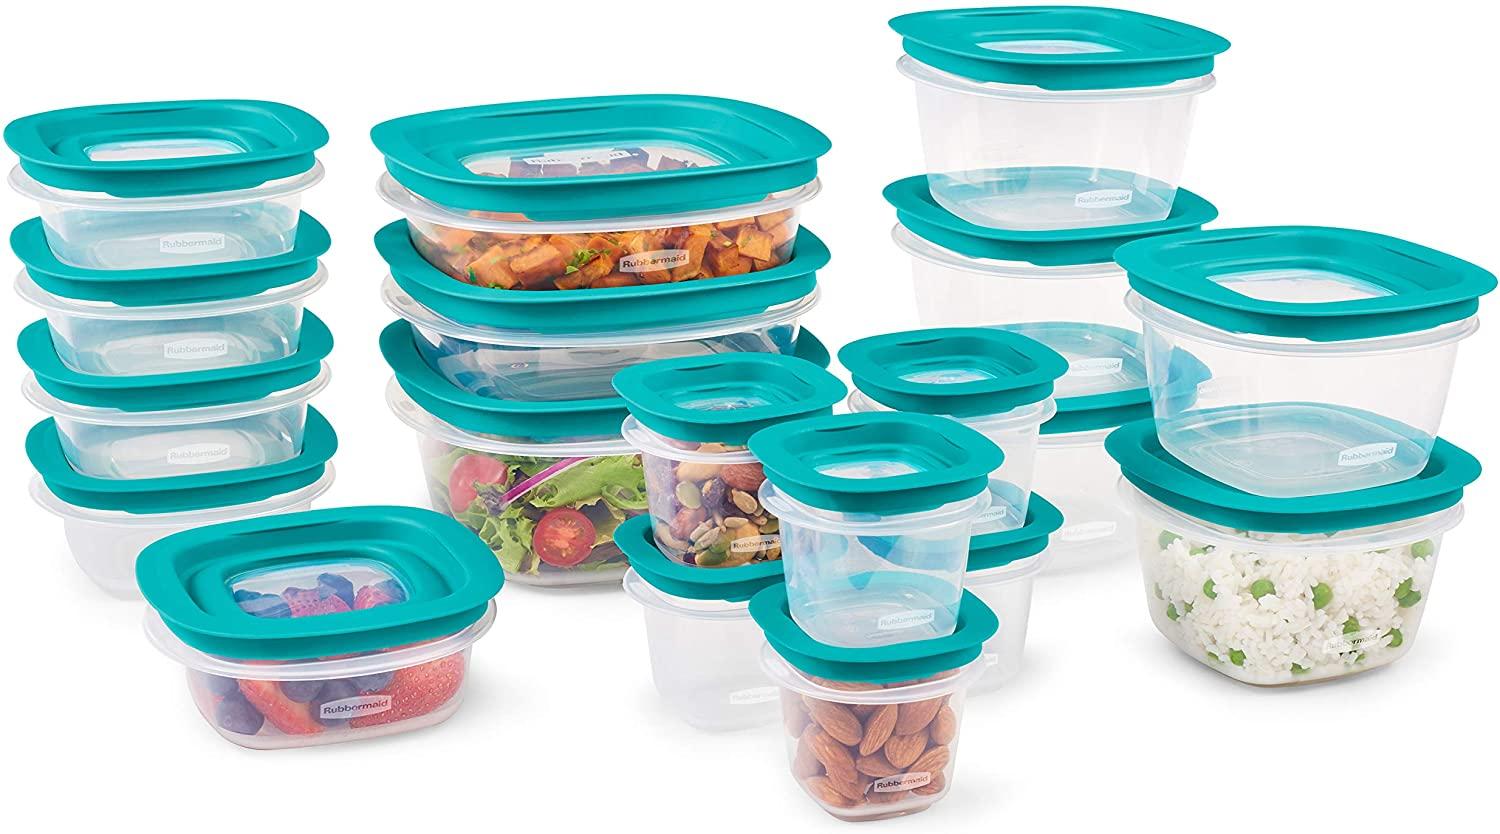 38 Rubbermaid EasyFindLids Leak Proof Lids Food Storage Set for $16.99